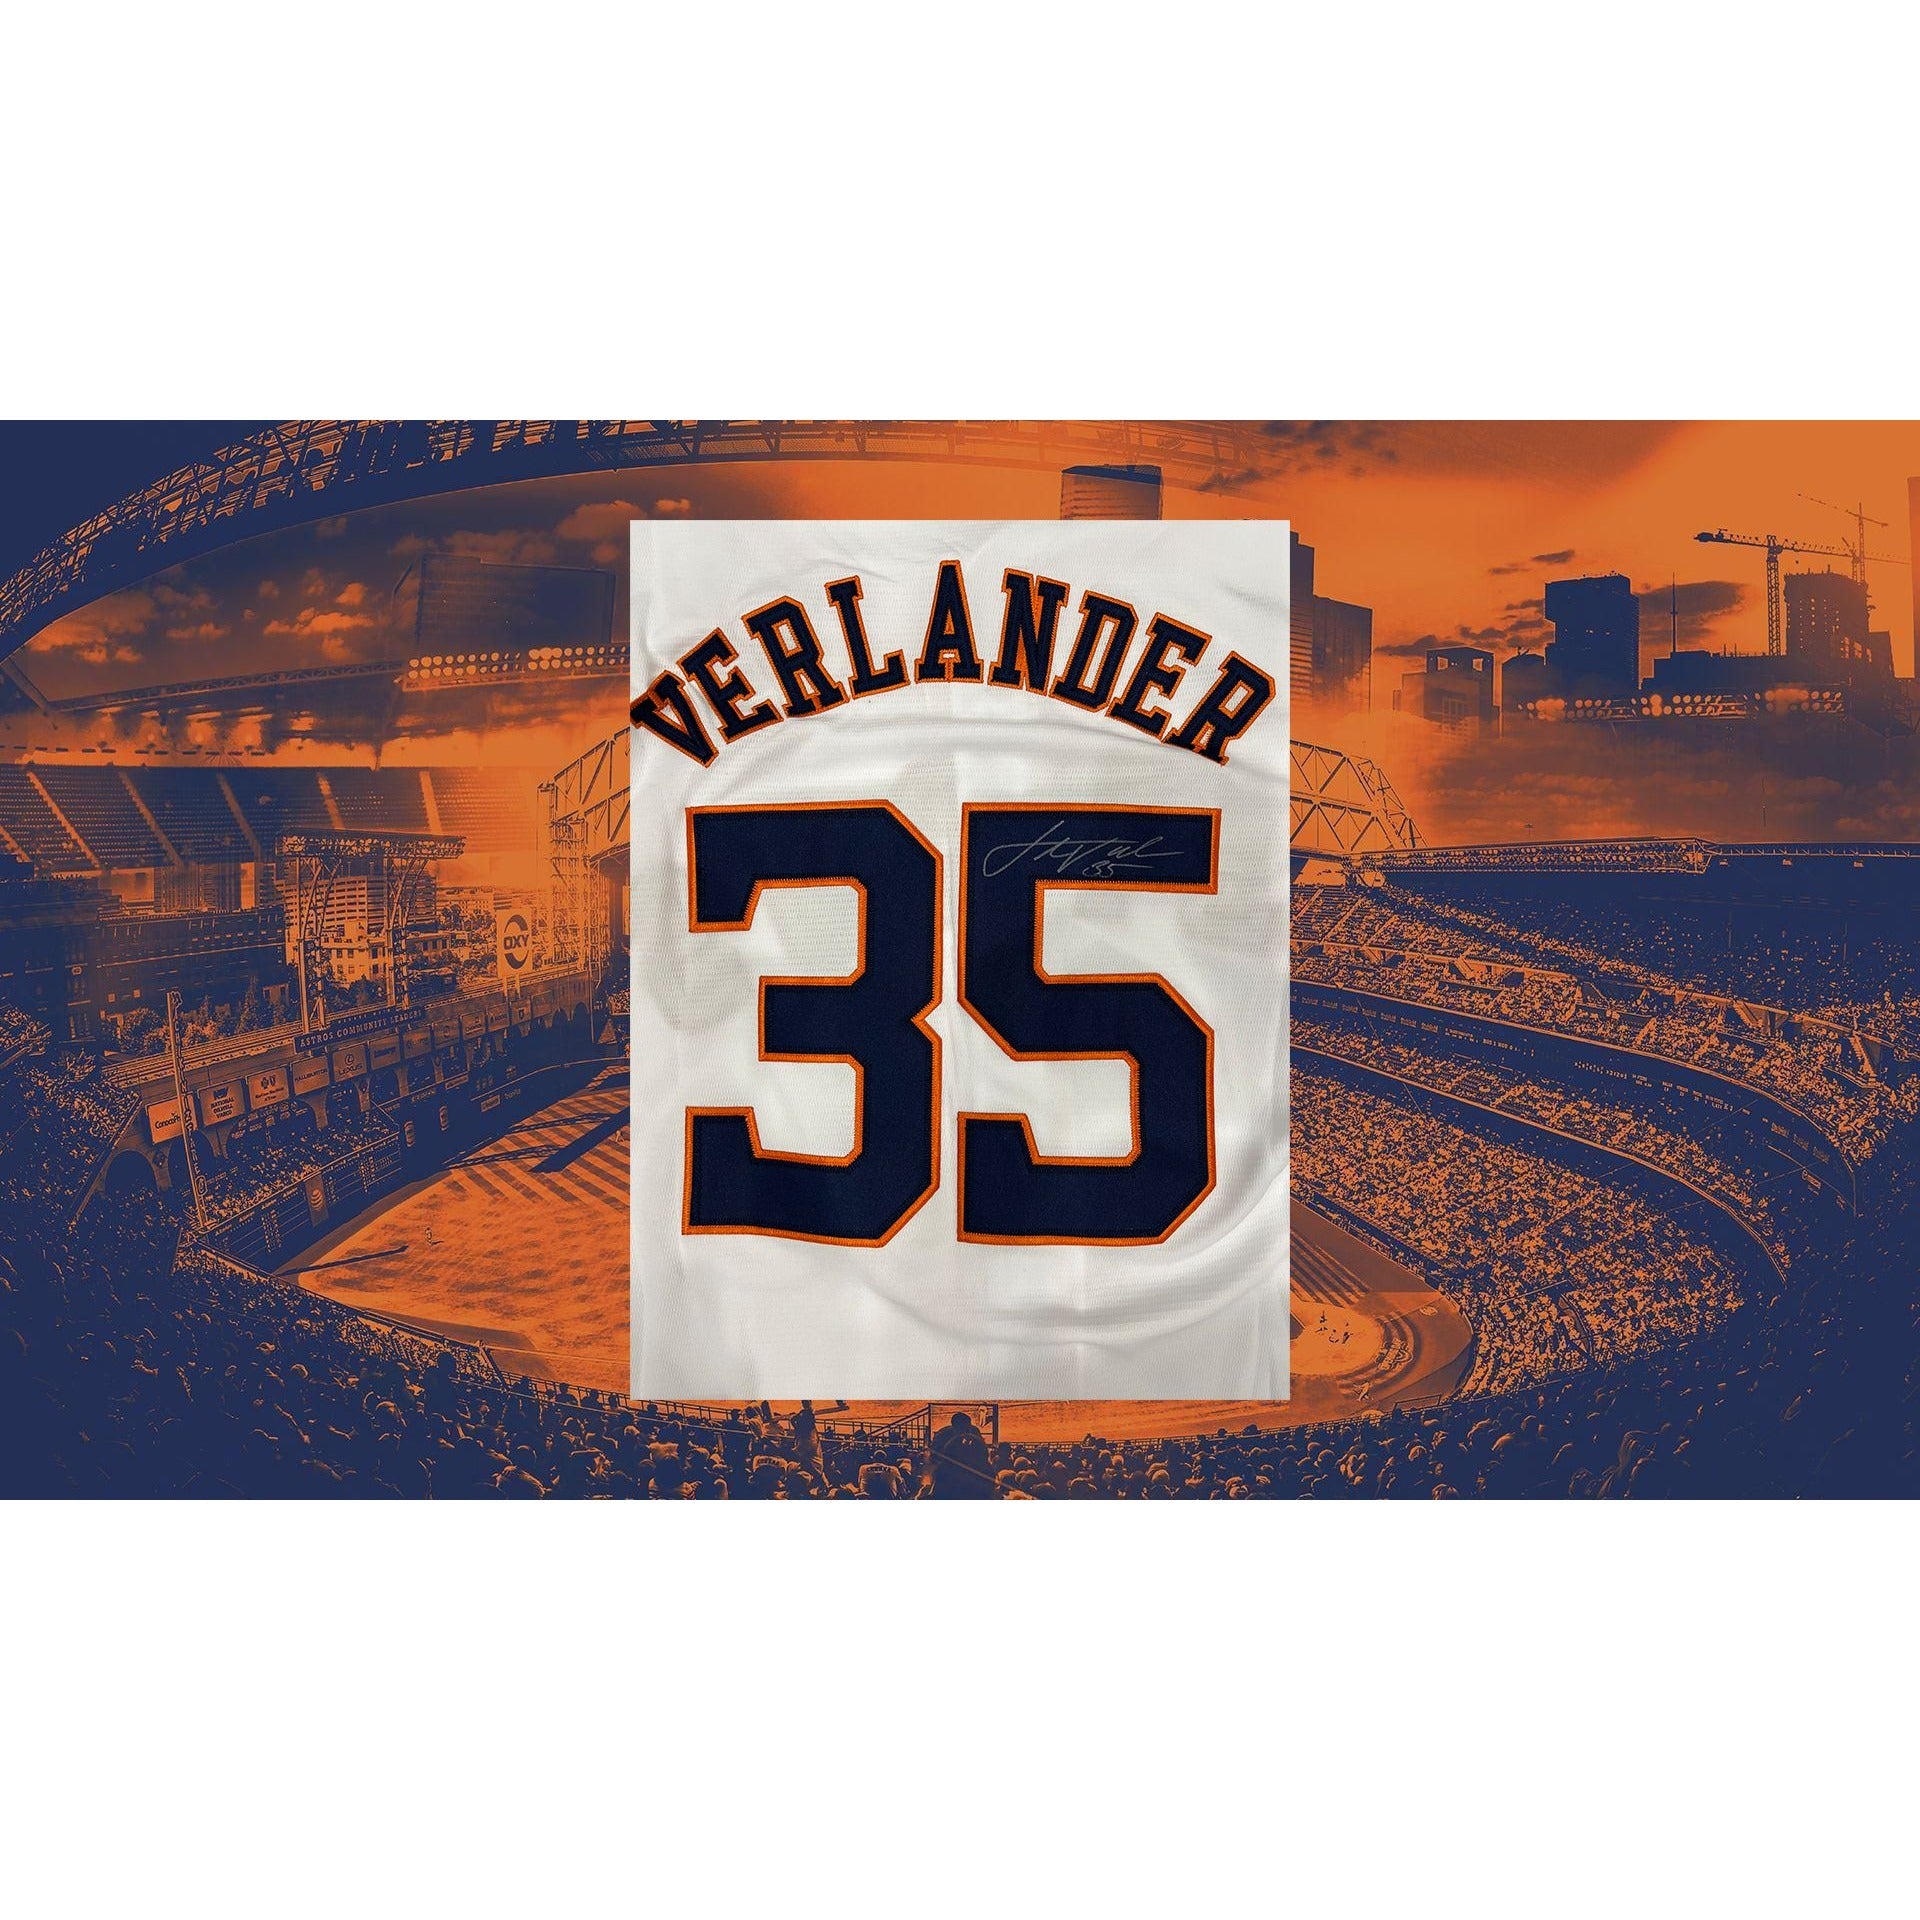 Astros fan receives signed Verlander jersey in exchange for home